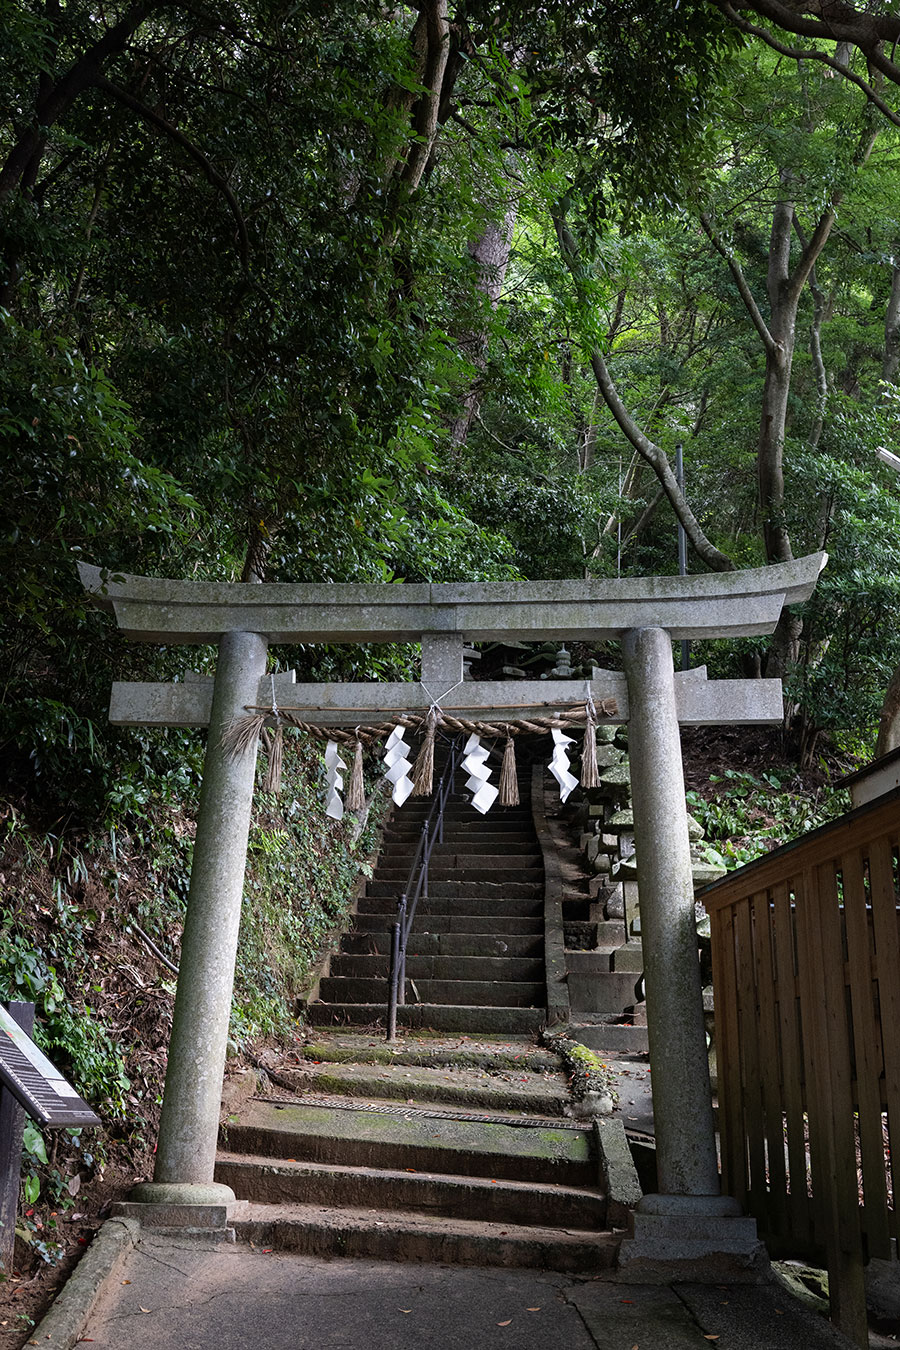 雲見浅間神社の入り口に立つ鳥居。